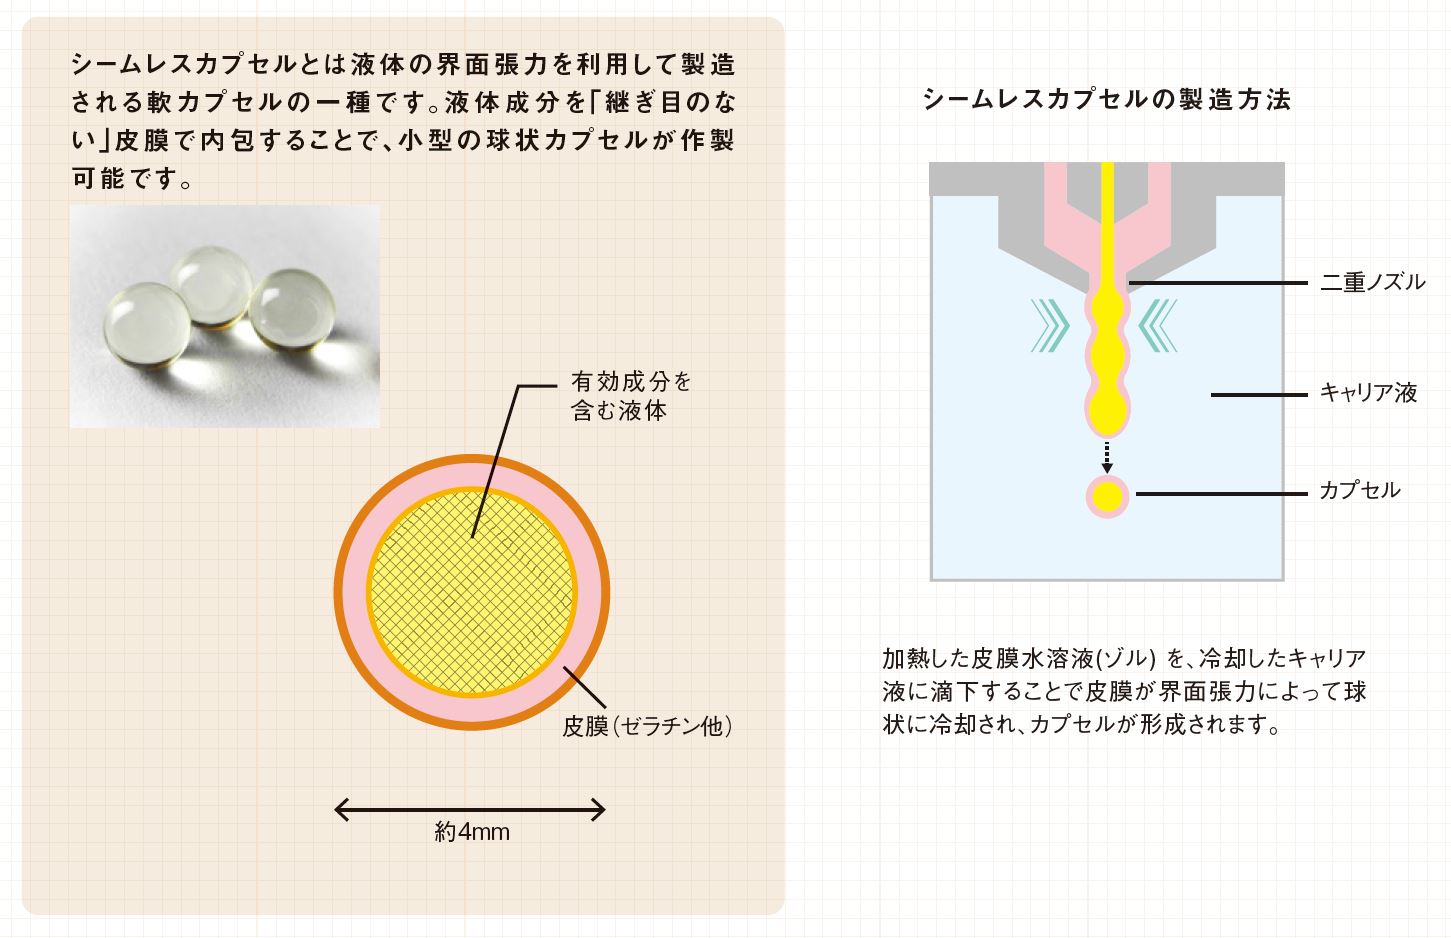 シームレスカプセルの説明と製造方法イメージ